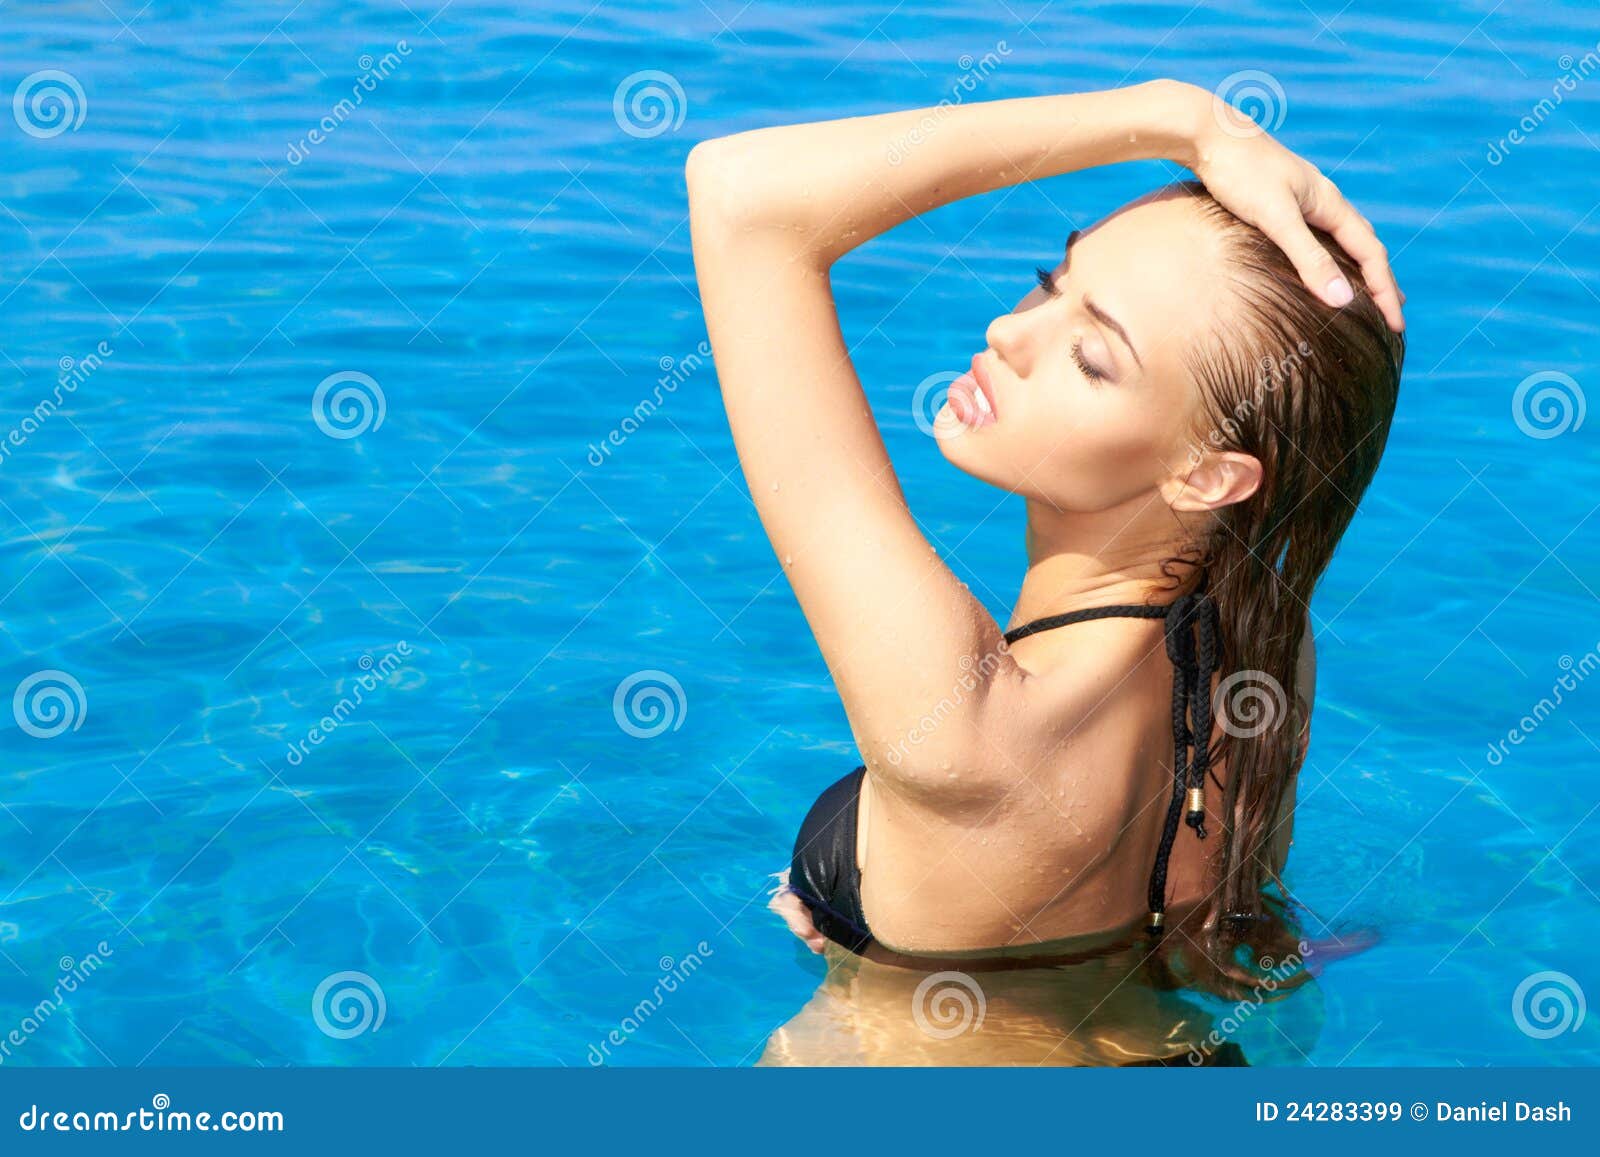 sensual woman in swimming pool